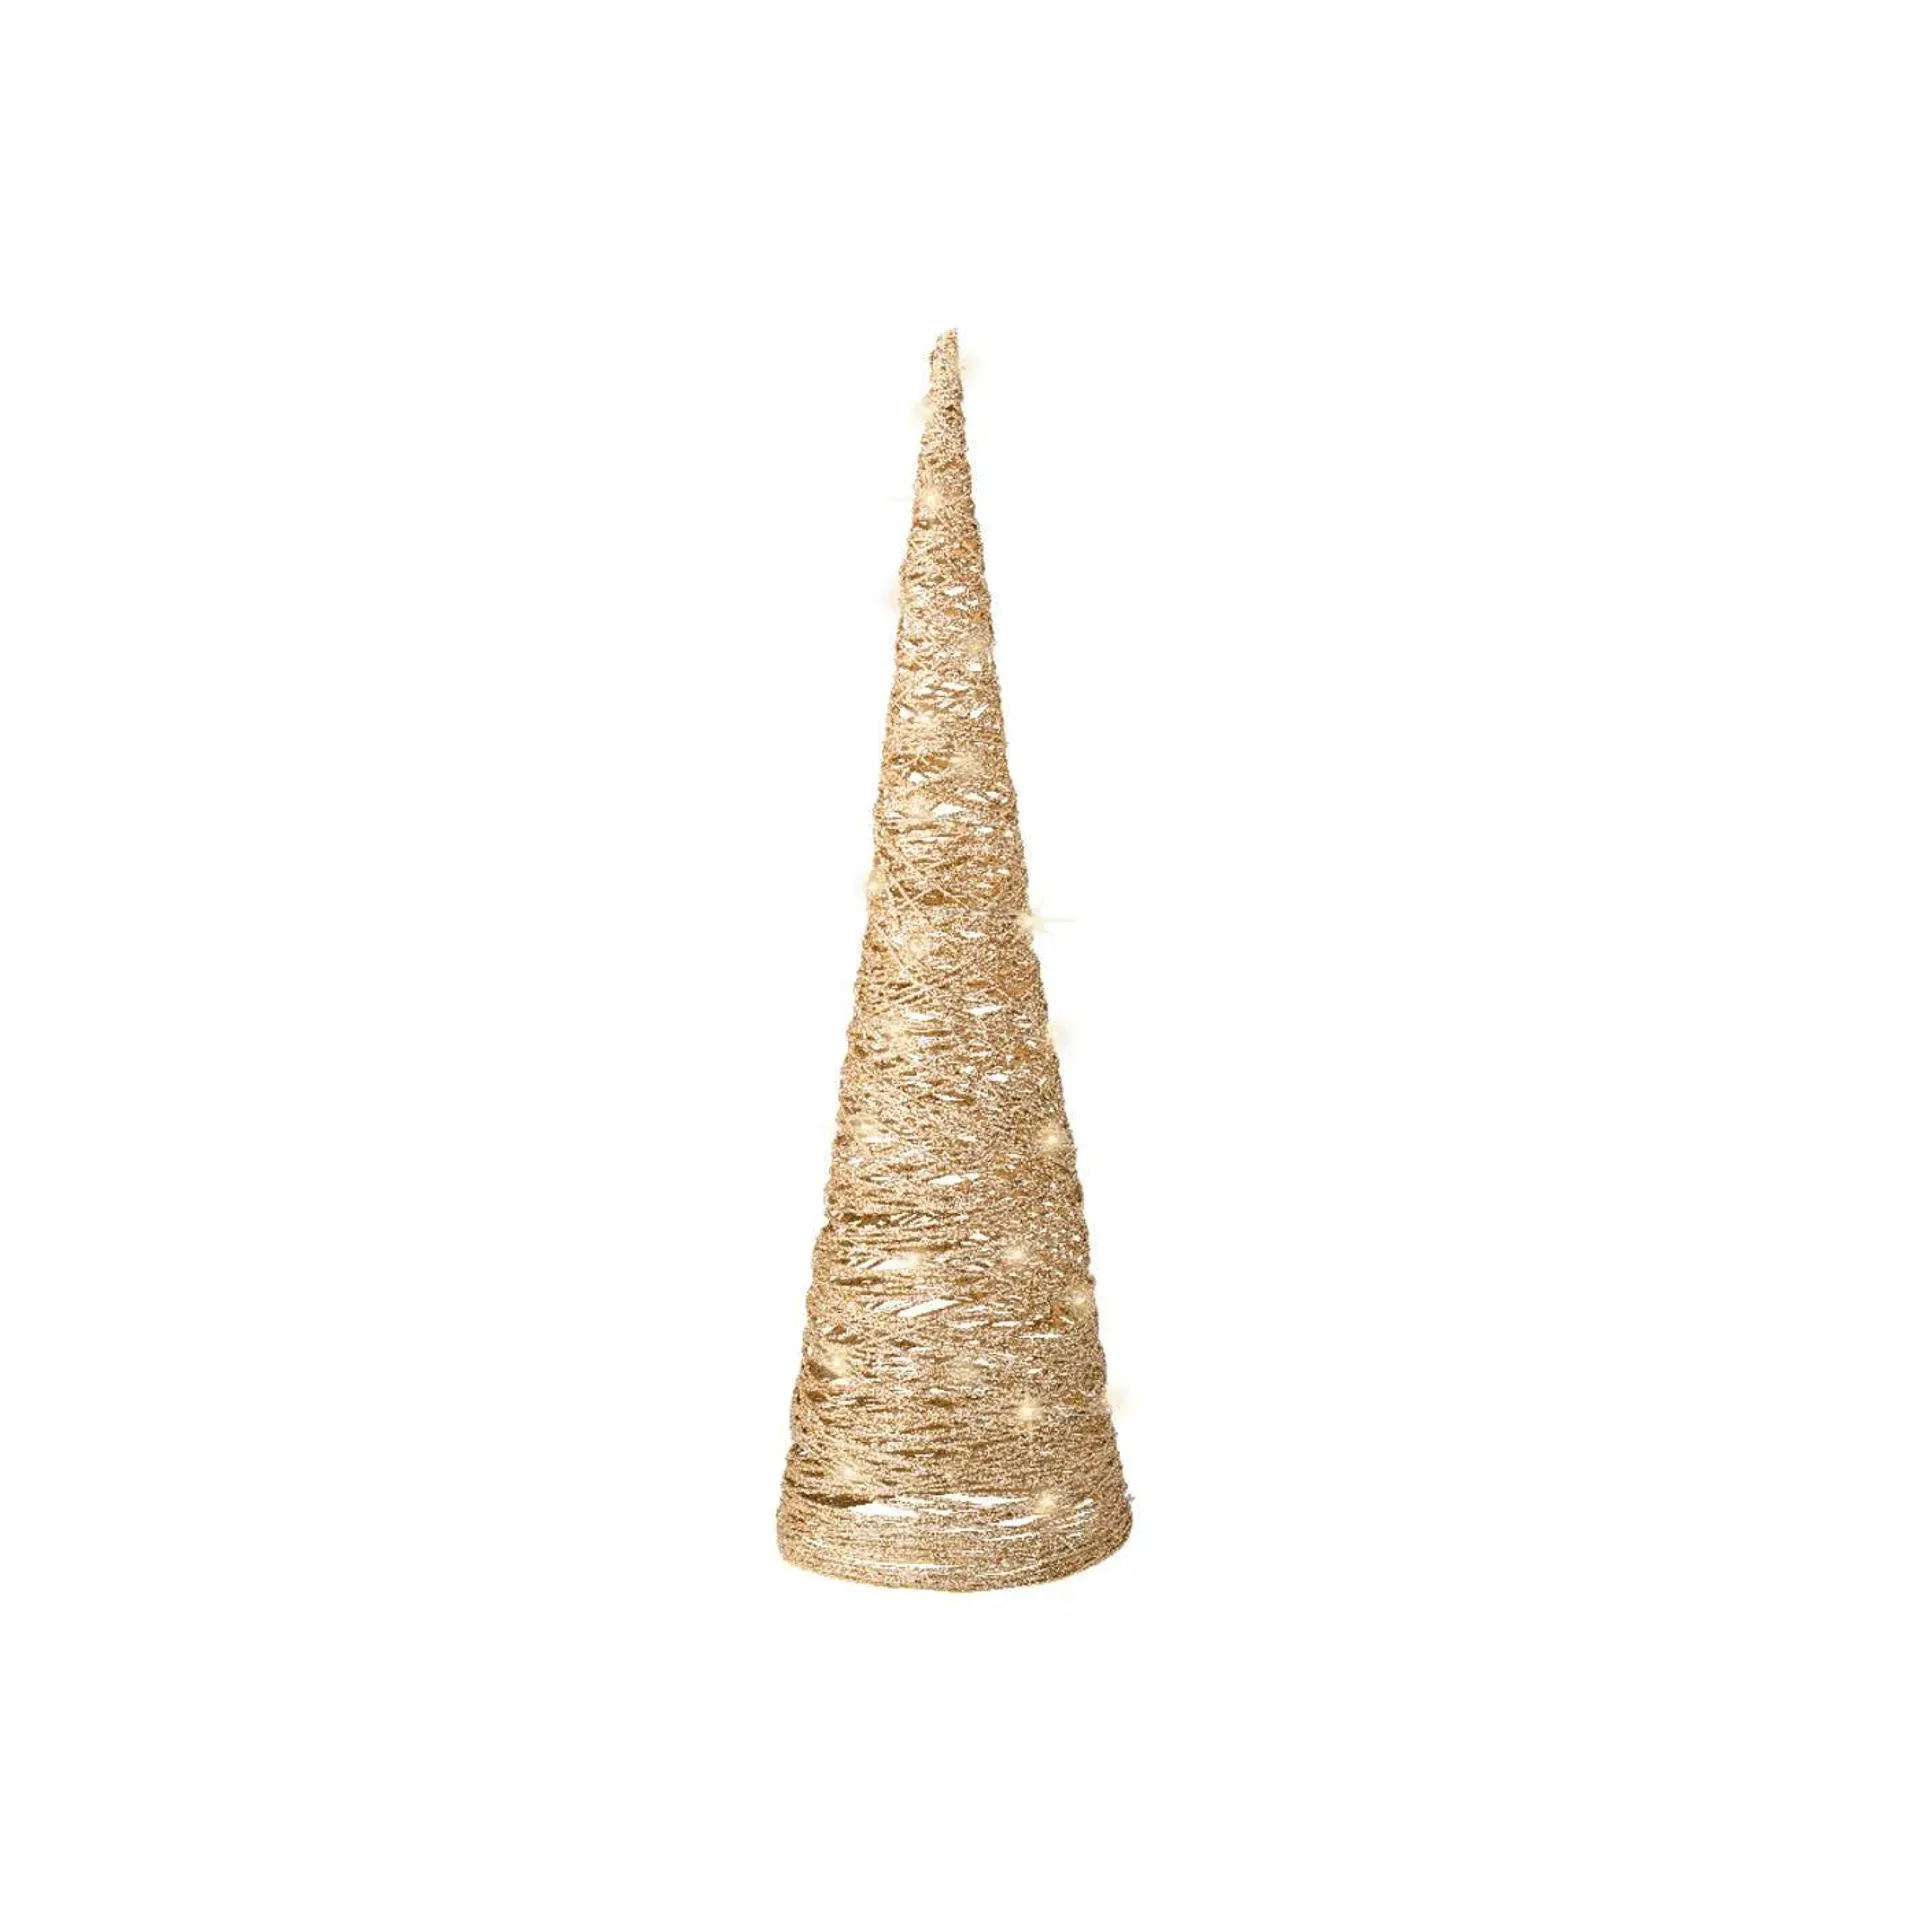 Kerstdecoratie Piramide Met Licht 60 cm - Goud